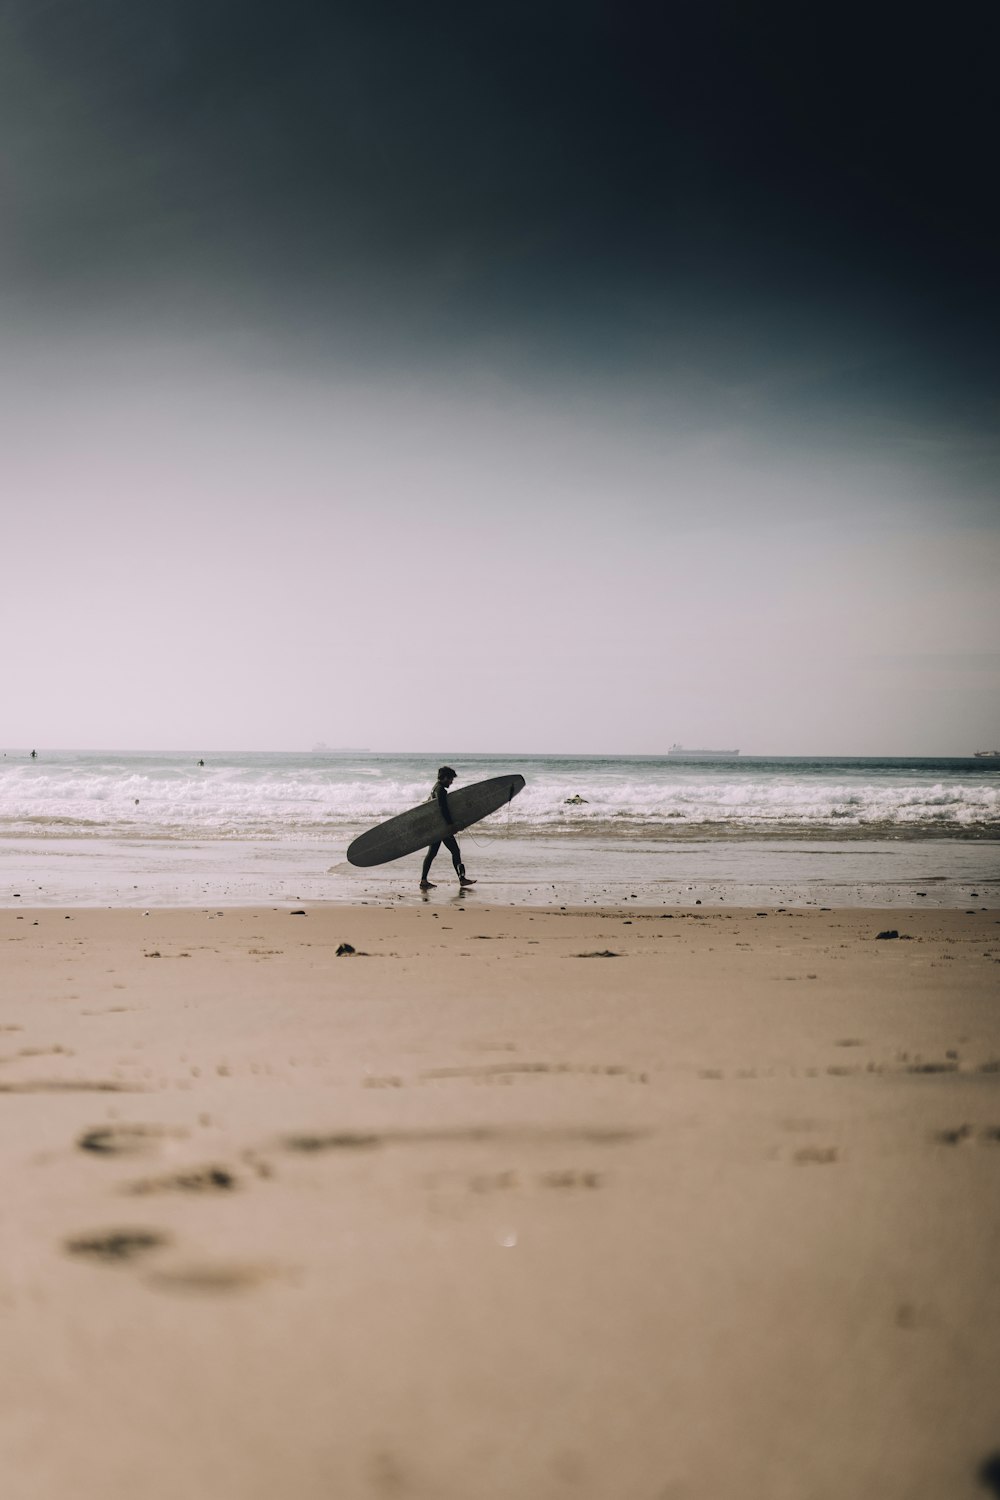 pessoa segurando prancha de surf